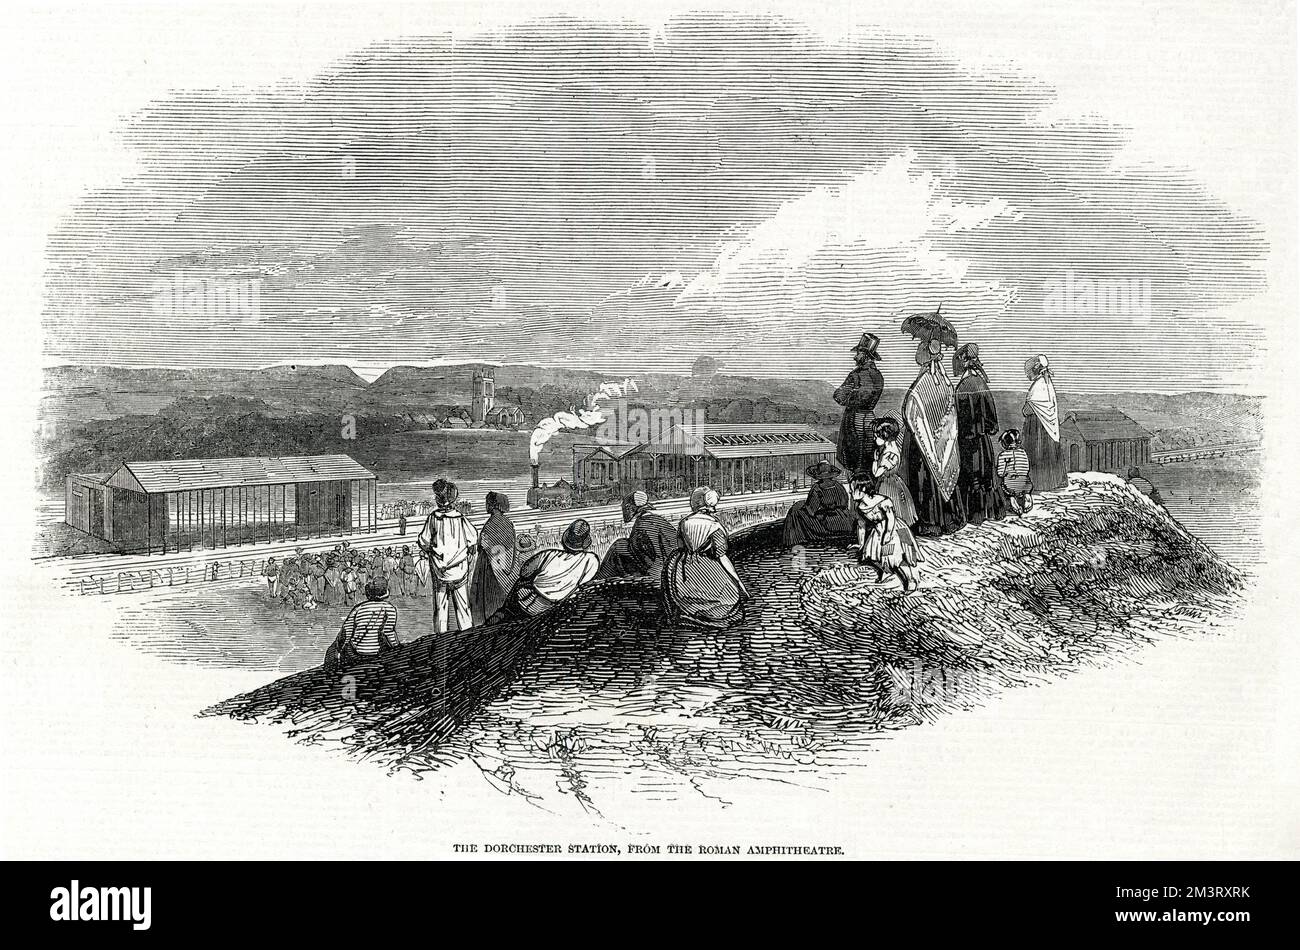 Dorchester Station vom römischen Amphitheater Datum: 1847 Stockfoto